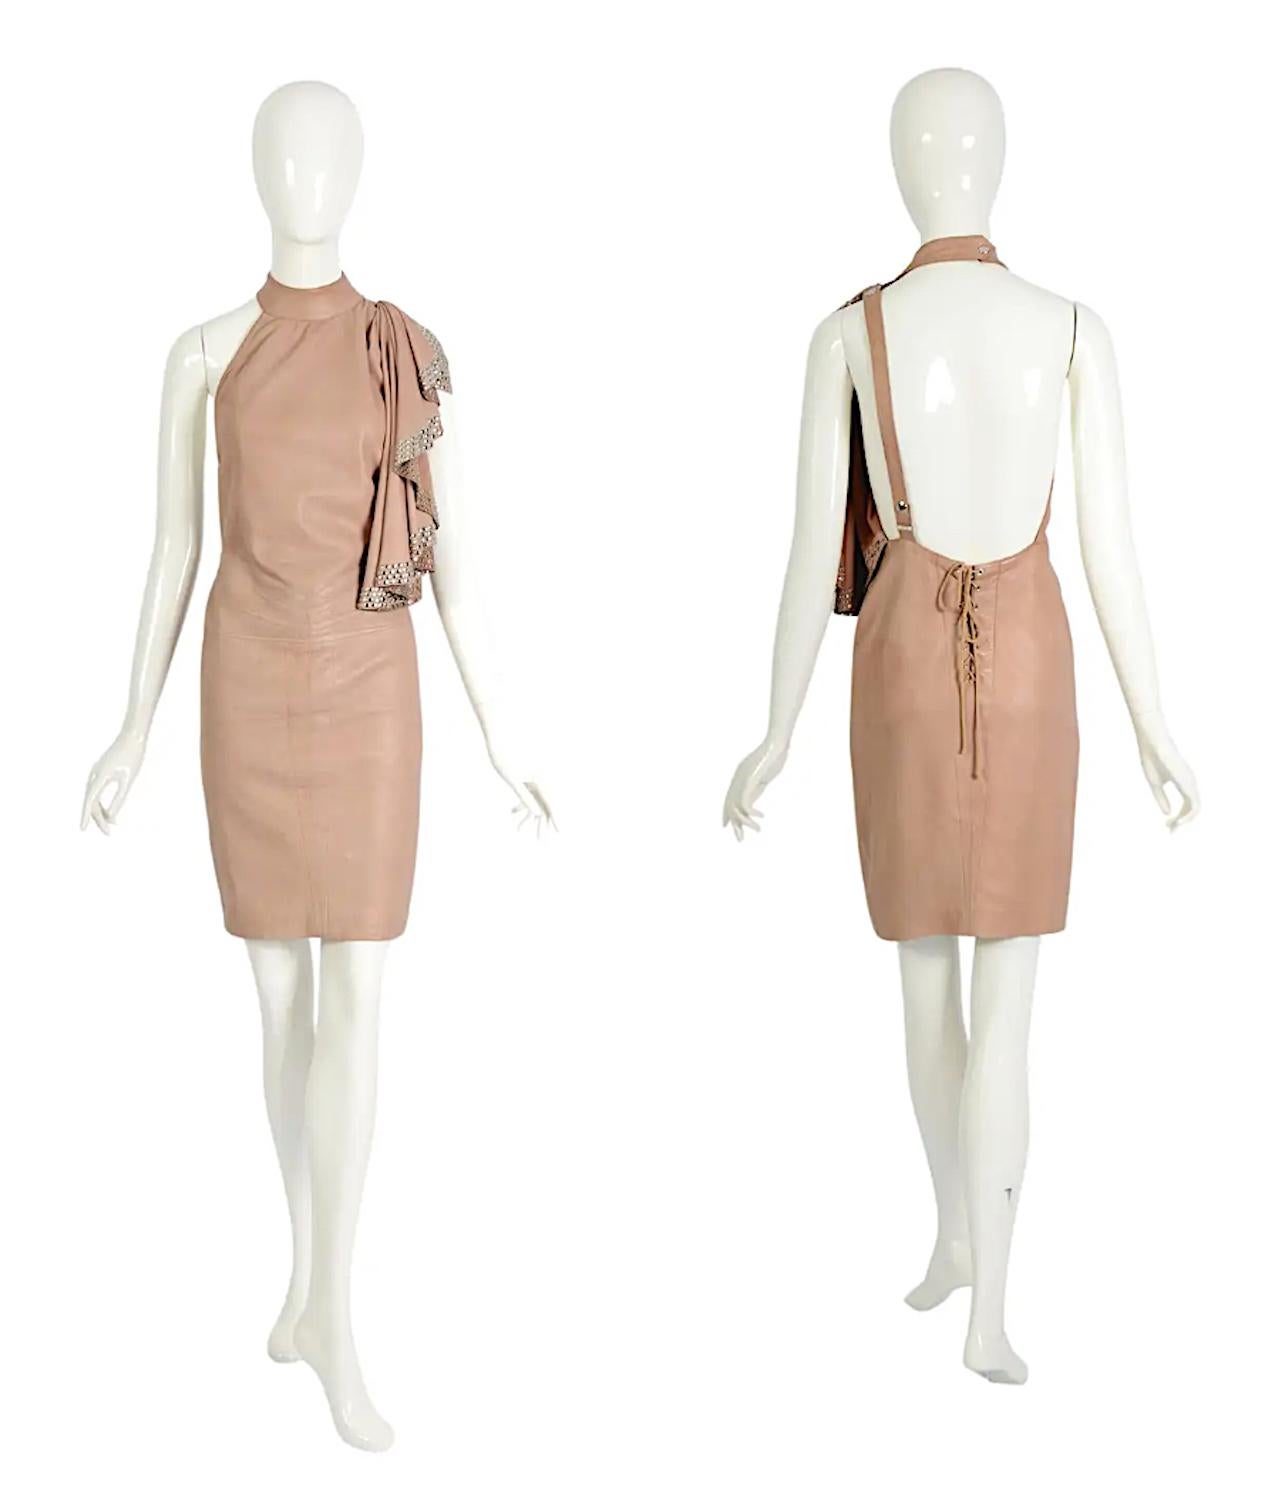 Voici une pièce exquise de l'histoire de la mode : la robe iconique en cuir souple nude d'Azzedine Alaïa de la collection printemps-été 1981.
Réalisé avec une attention méticuleuse aux détails, ce vêtement de qualité muséale témoigne du savoir-faire